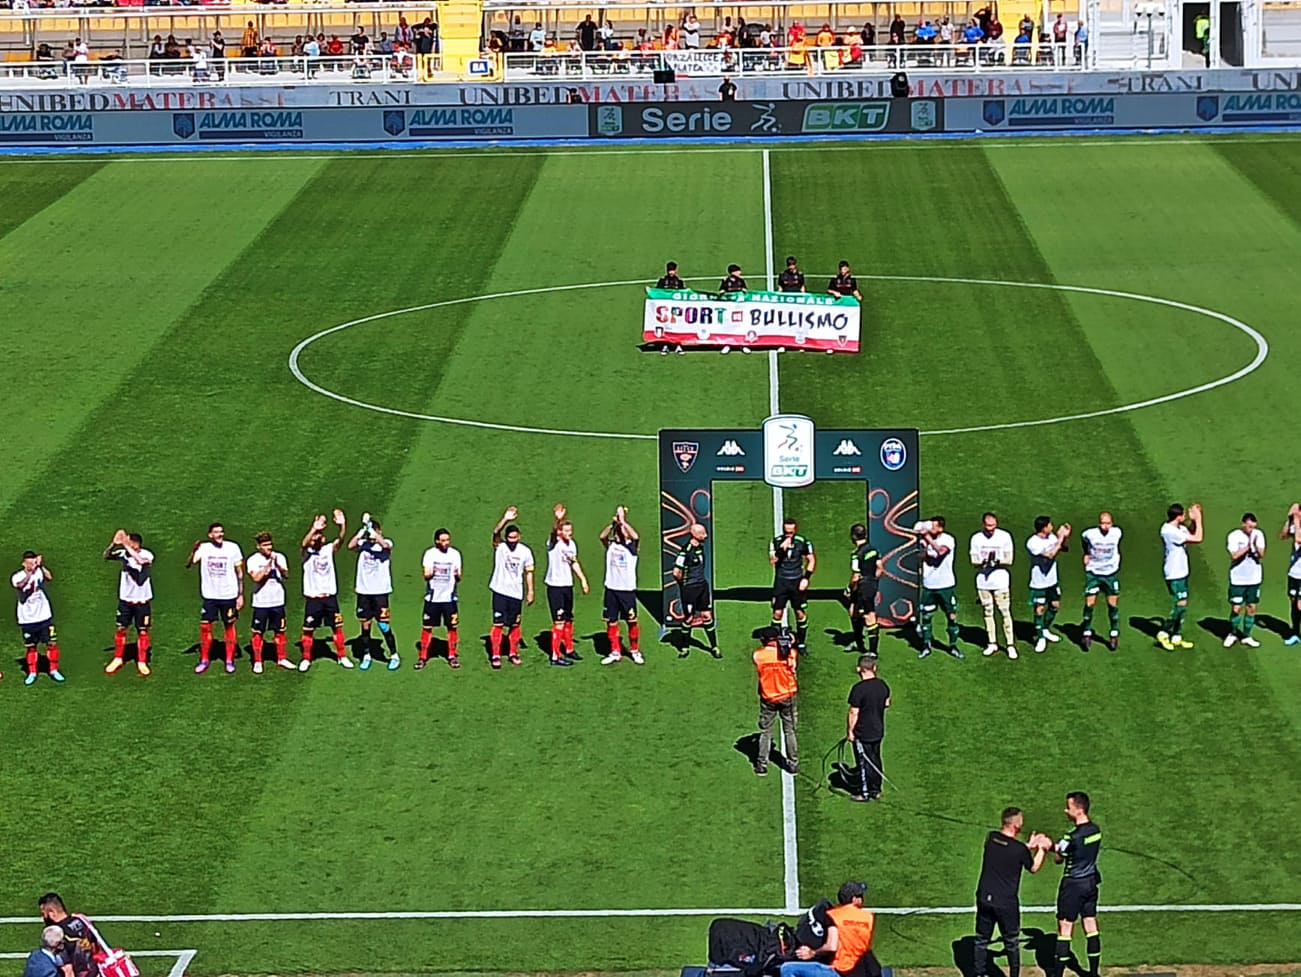 La bella partita del 25 aprile dedicata al sociale. Tutti i giocatori del Lecce e del Pisa erano in campo con la maglietta celebrativa della lotta al bullismo.